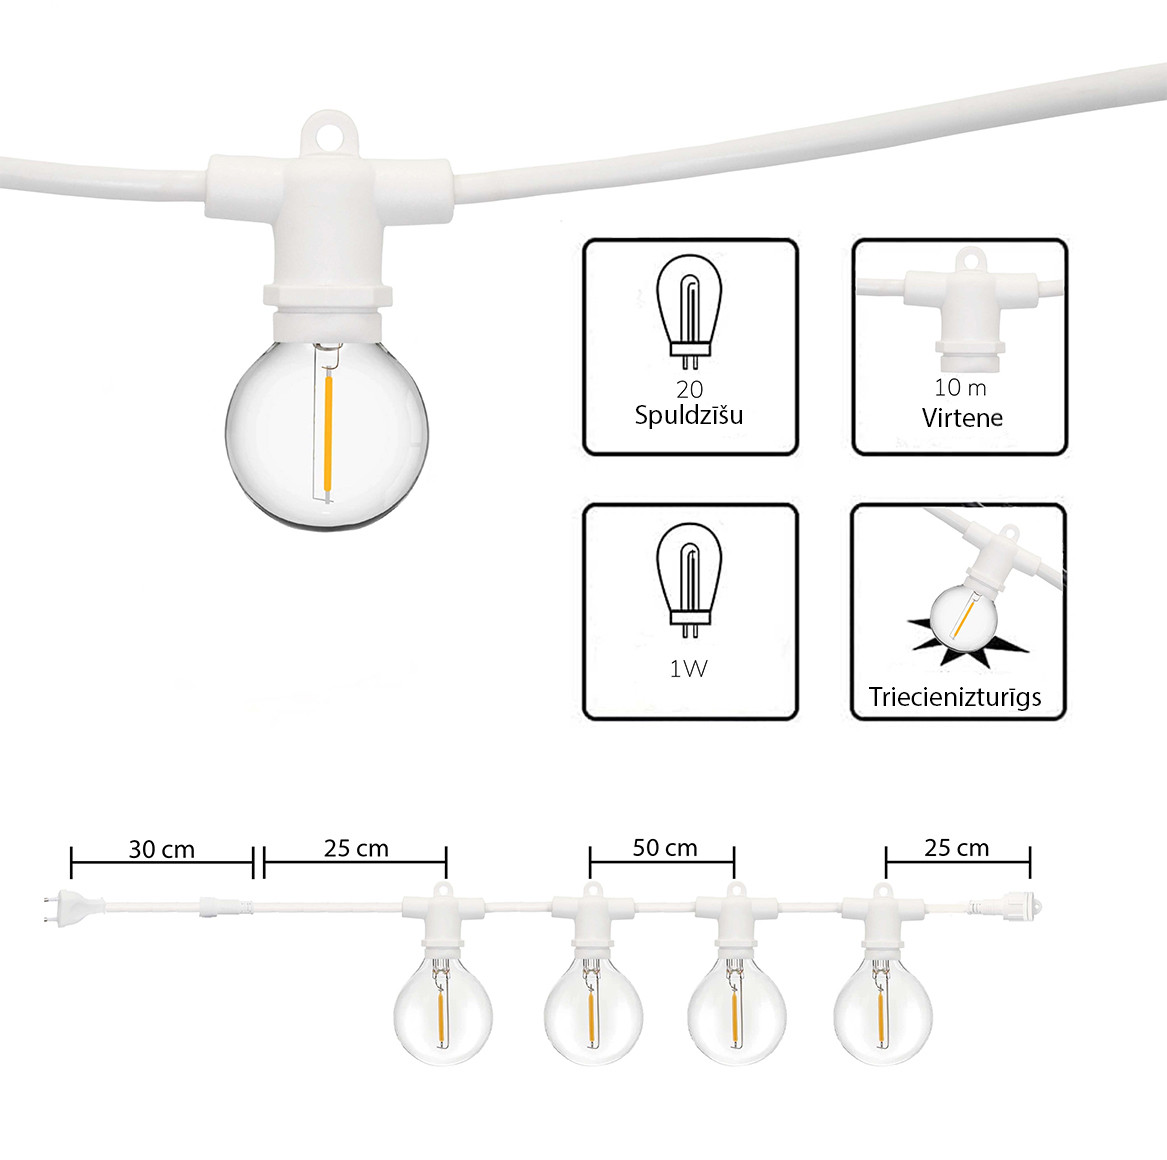 Āra virtene (LED lampiņas) 20 m Perl baltā krāsā